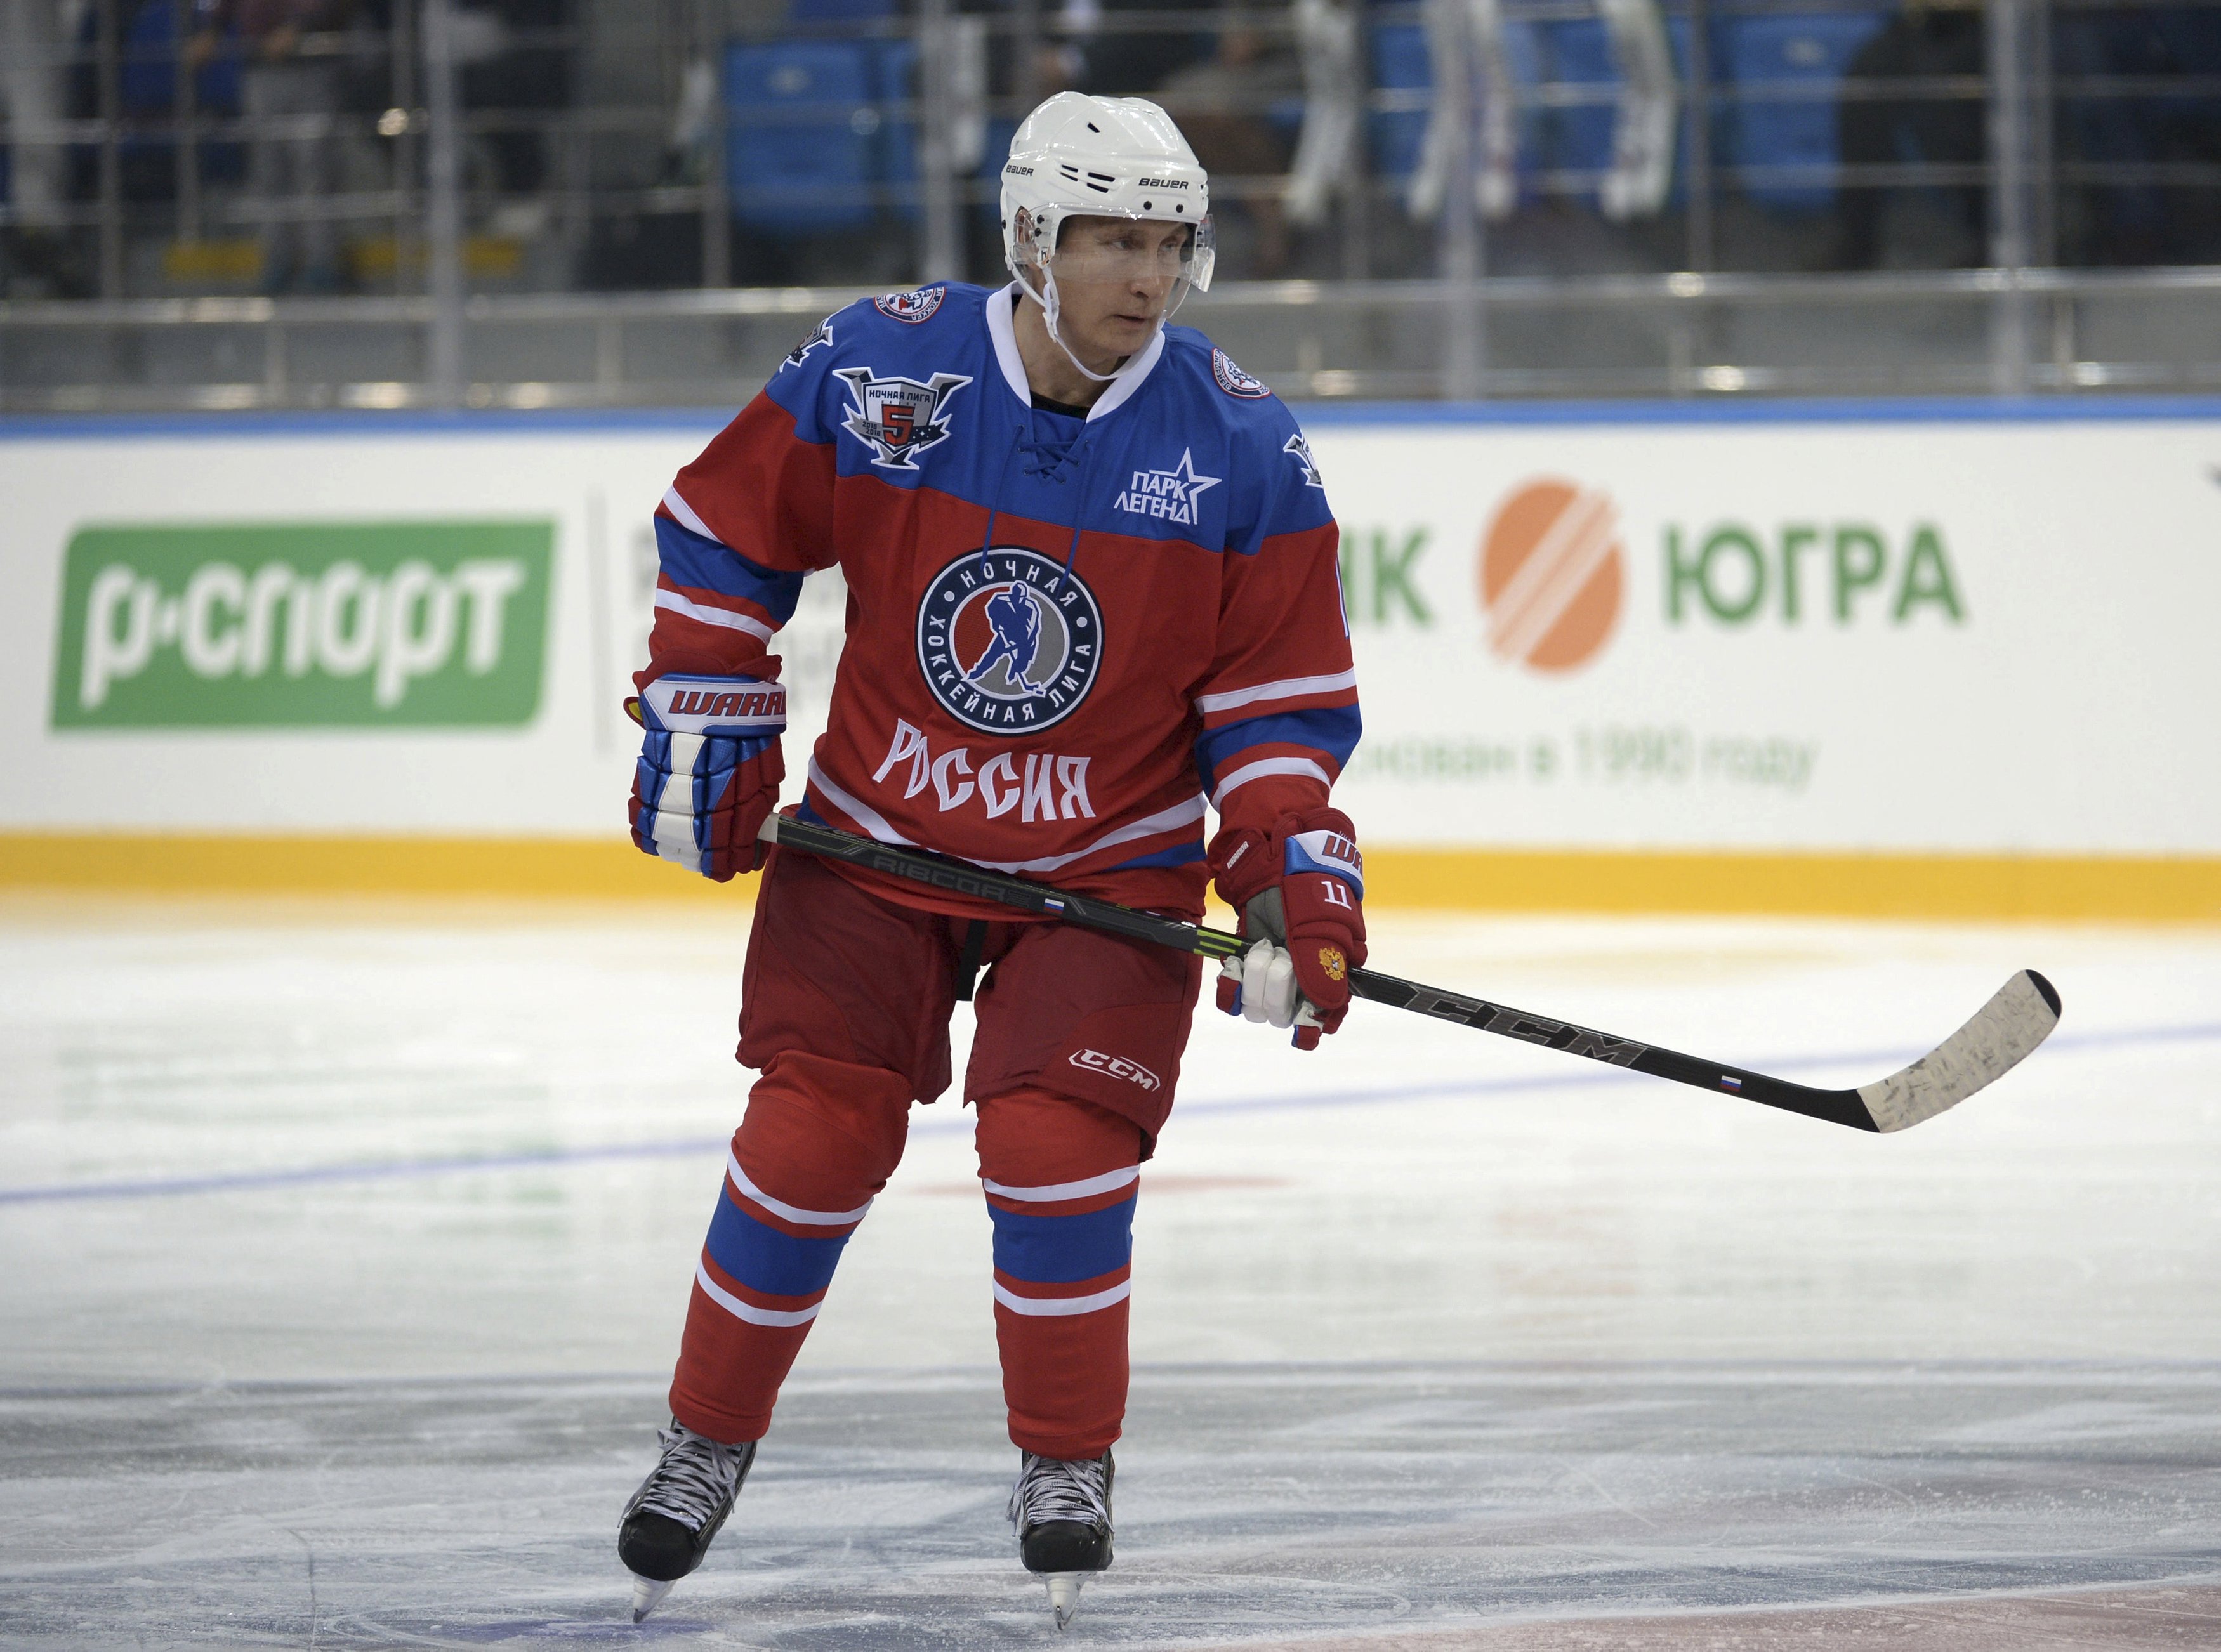 Putin celebra su cumpleaños con un partido de hockey sobre hielo (Fotos)